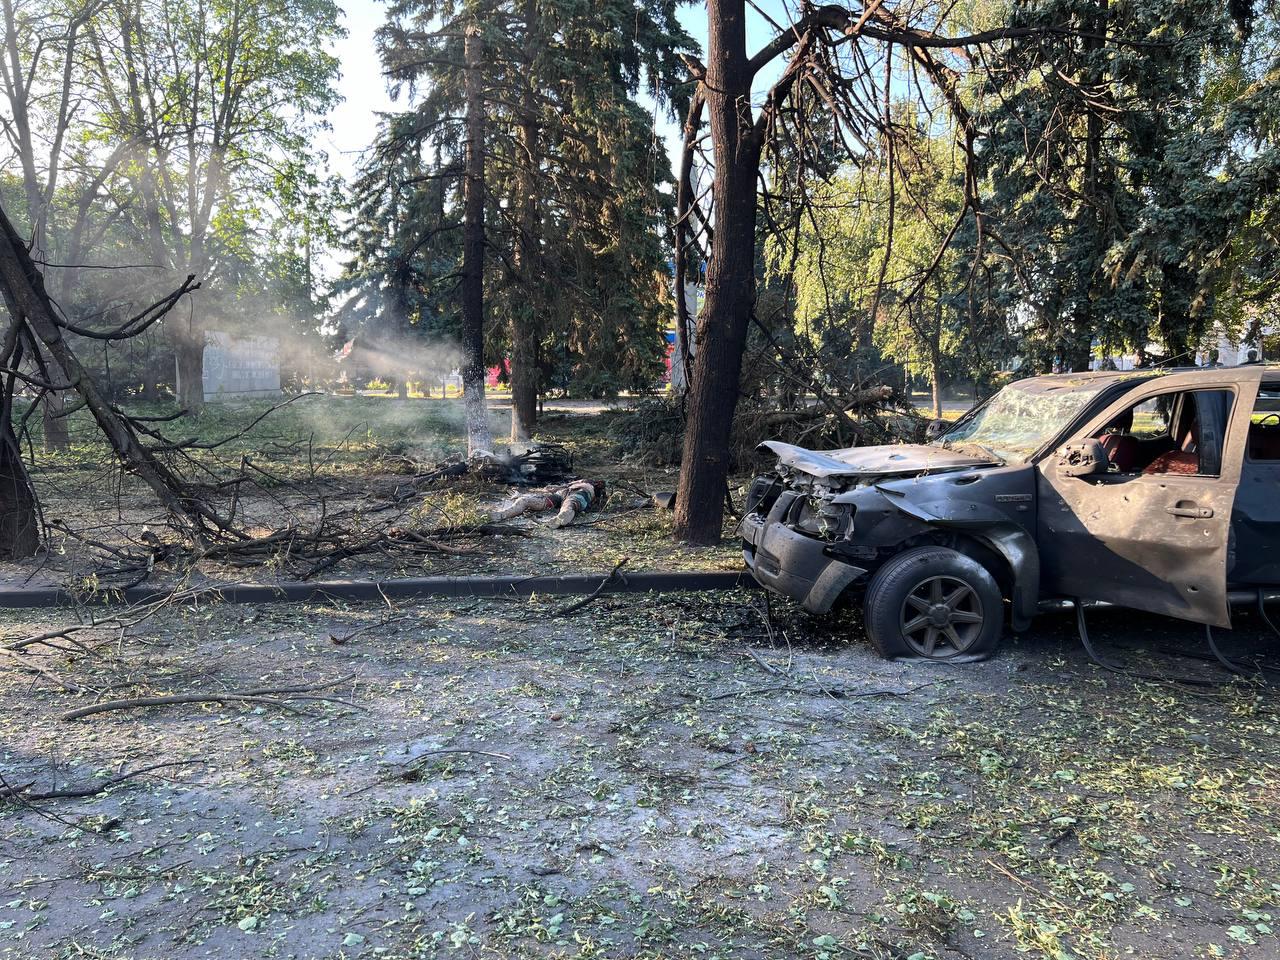 澤倫斯基在社群平台發布的現場照片顯示，地面被炸出一個大坑，還有燒毀的車輛。圖/取自Volodymyr Zelenskyy臉書